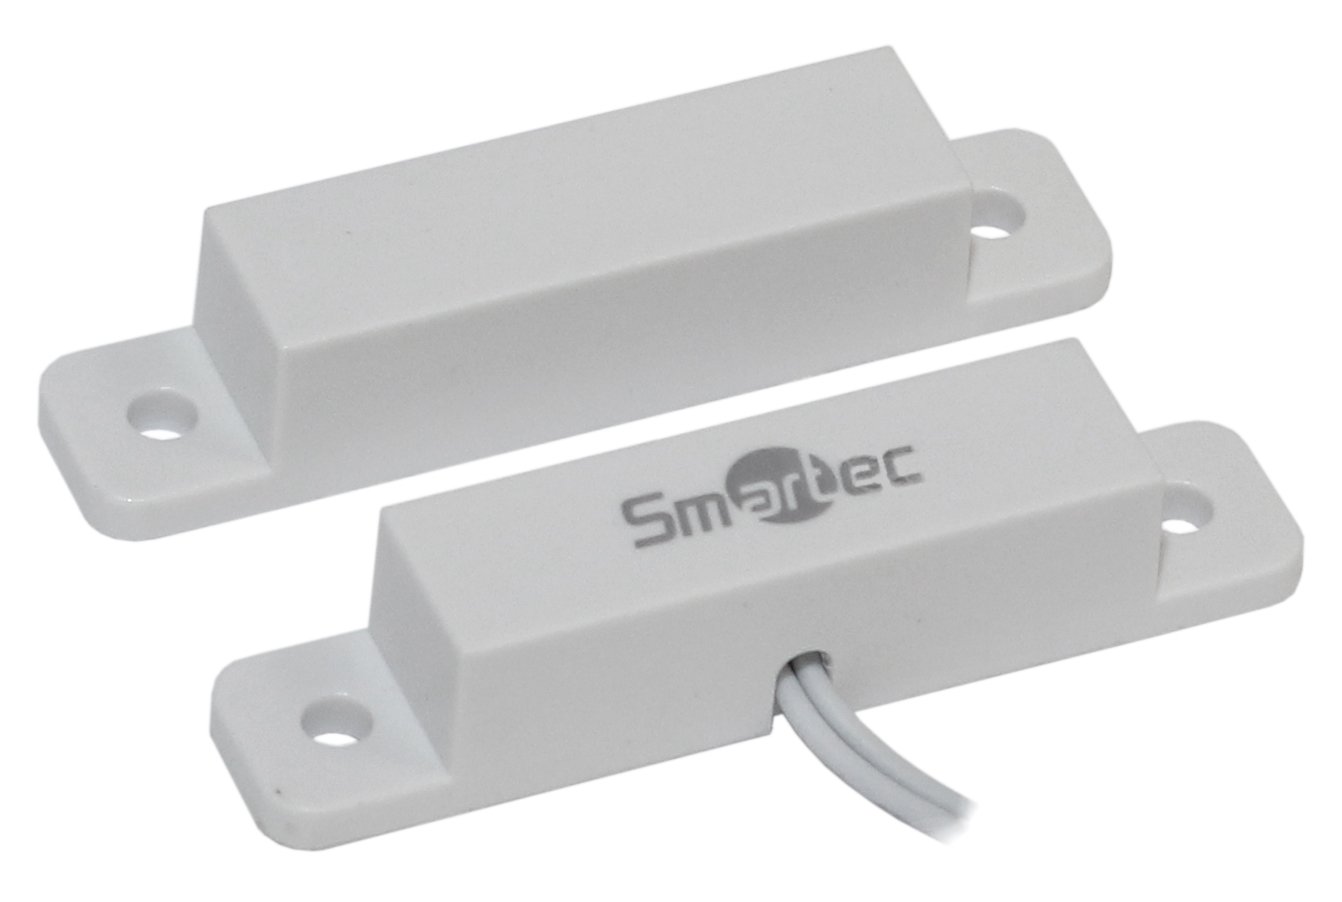 Все Smartec ST-DM120NC-WT магнитоконтактный датчик видеонаблюдения в магазине Vidos Group